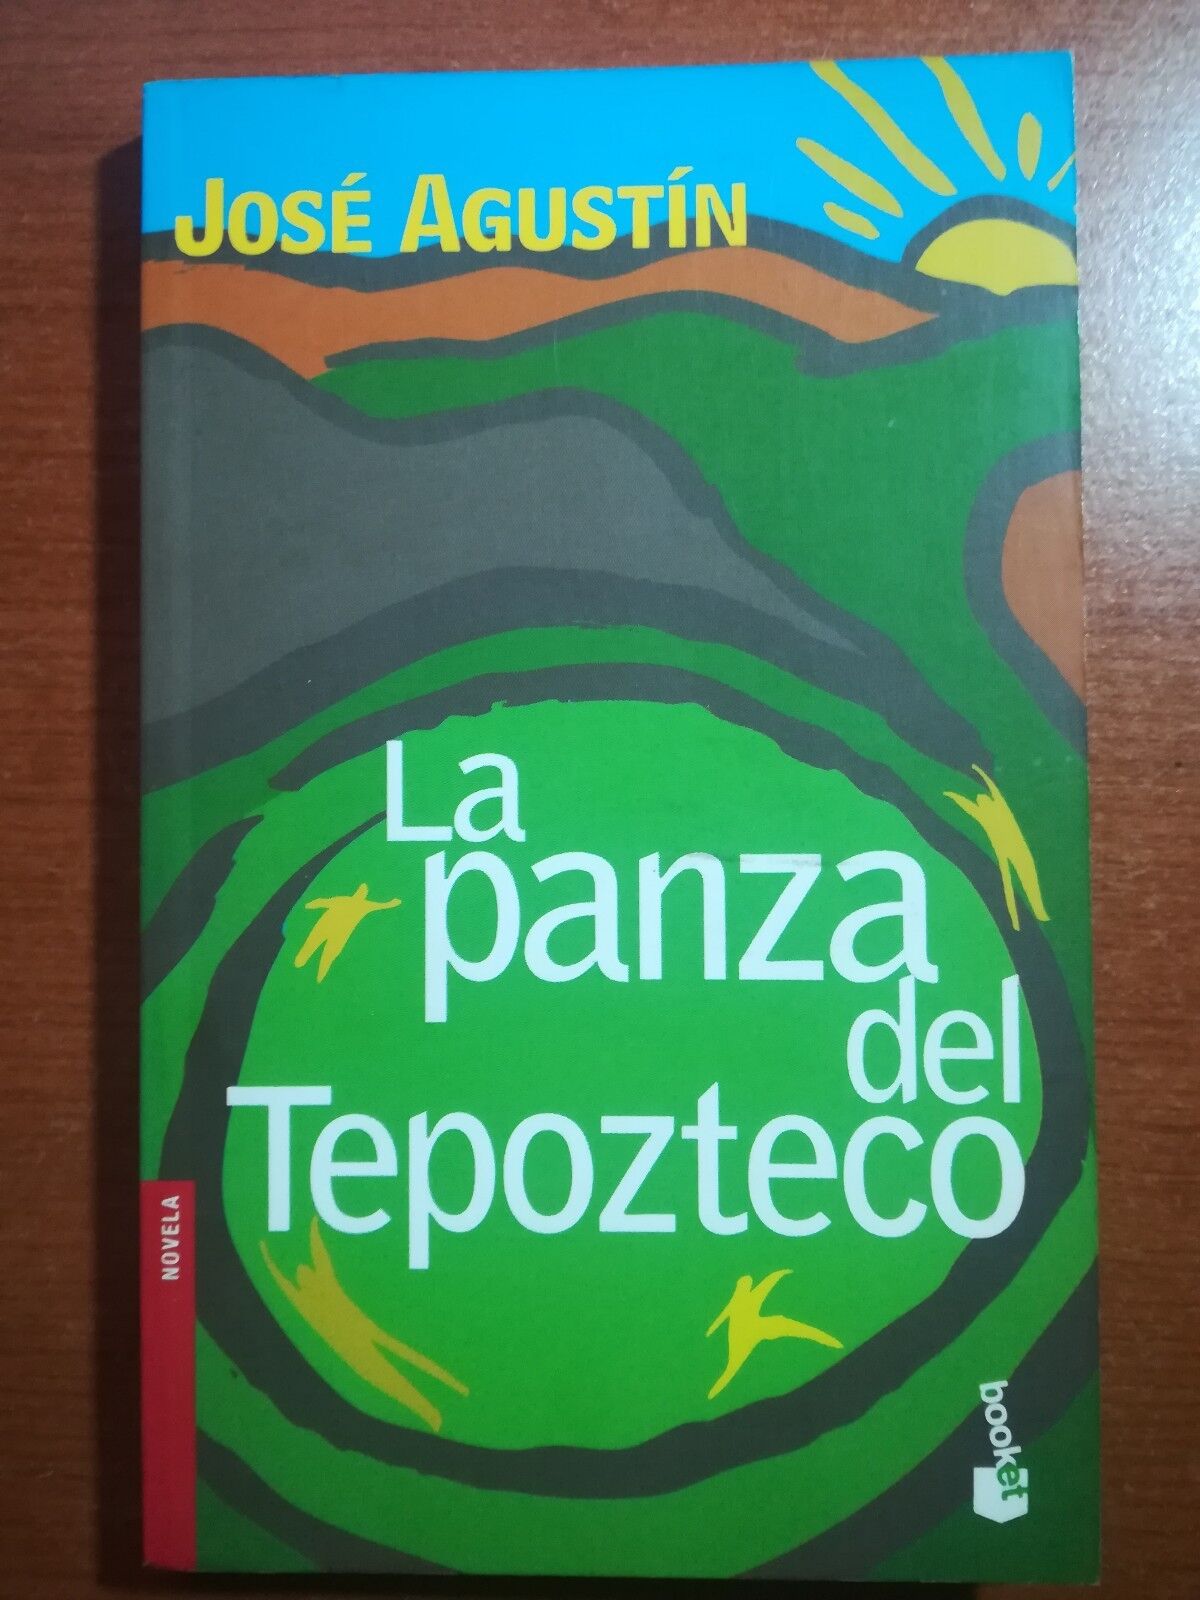 La panza del tapozteco - Jos? Agustin - Booket - 2005 - M